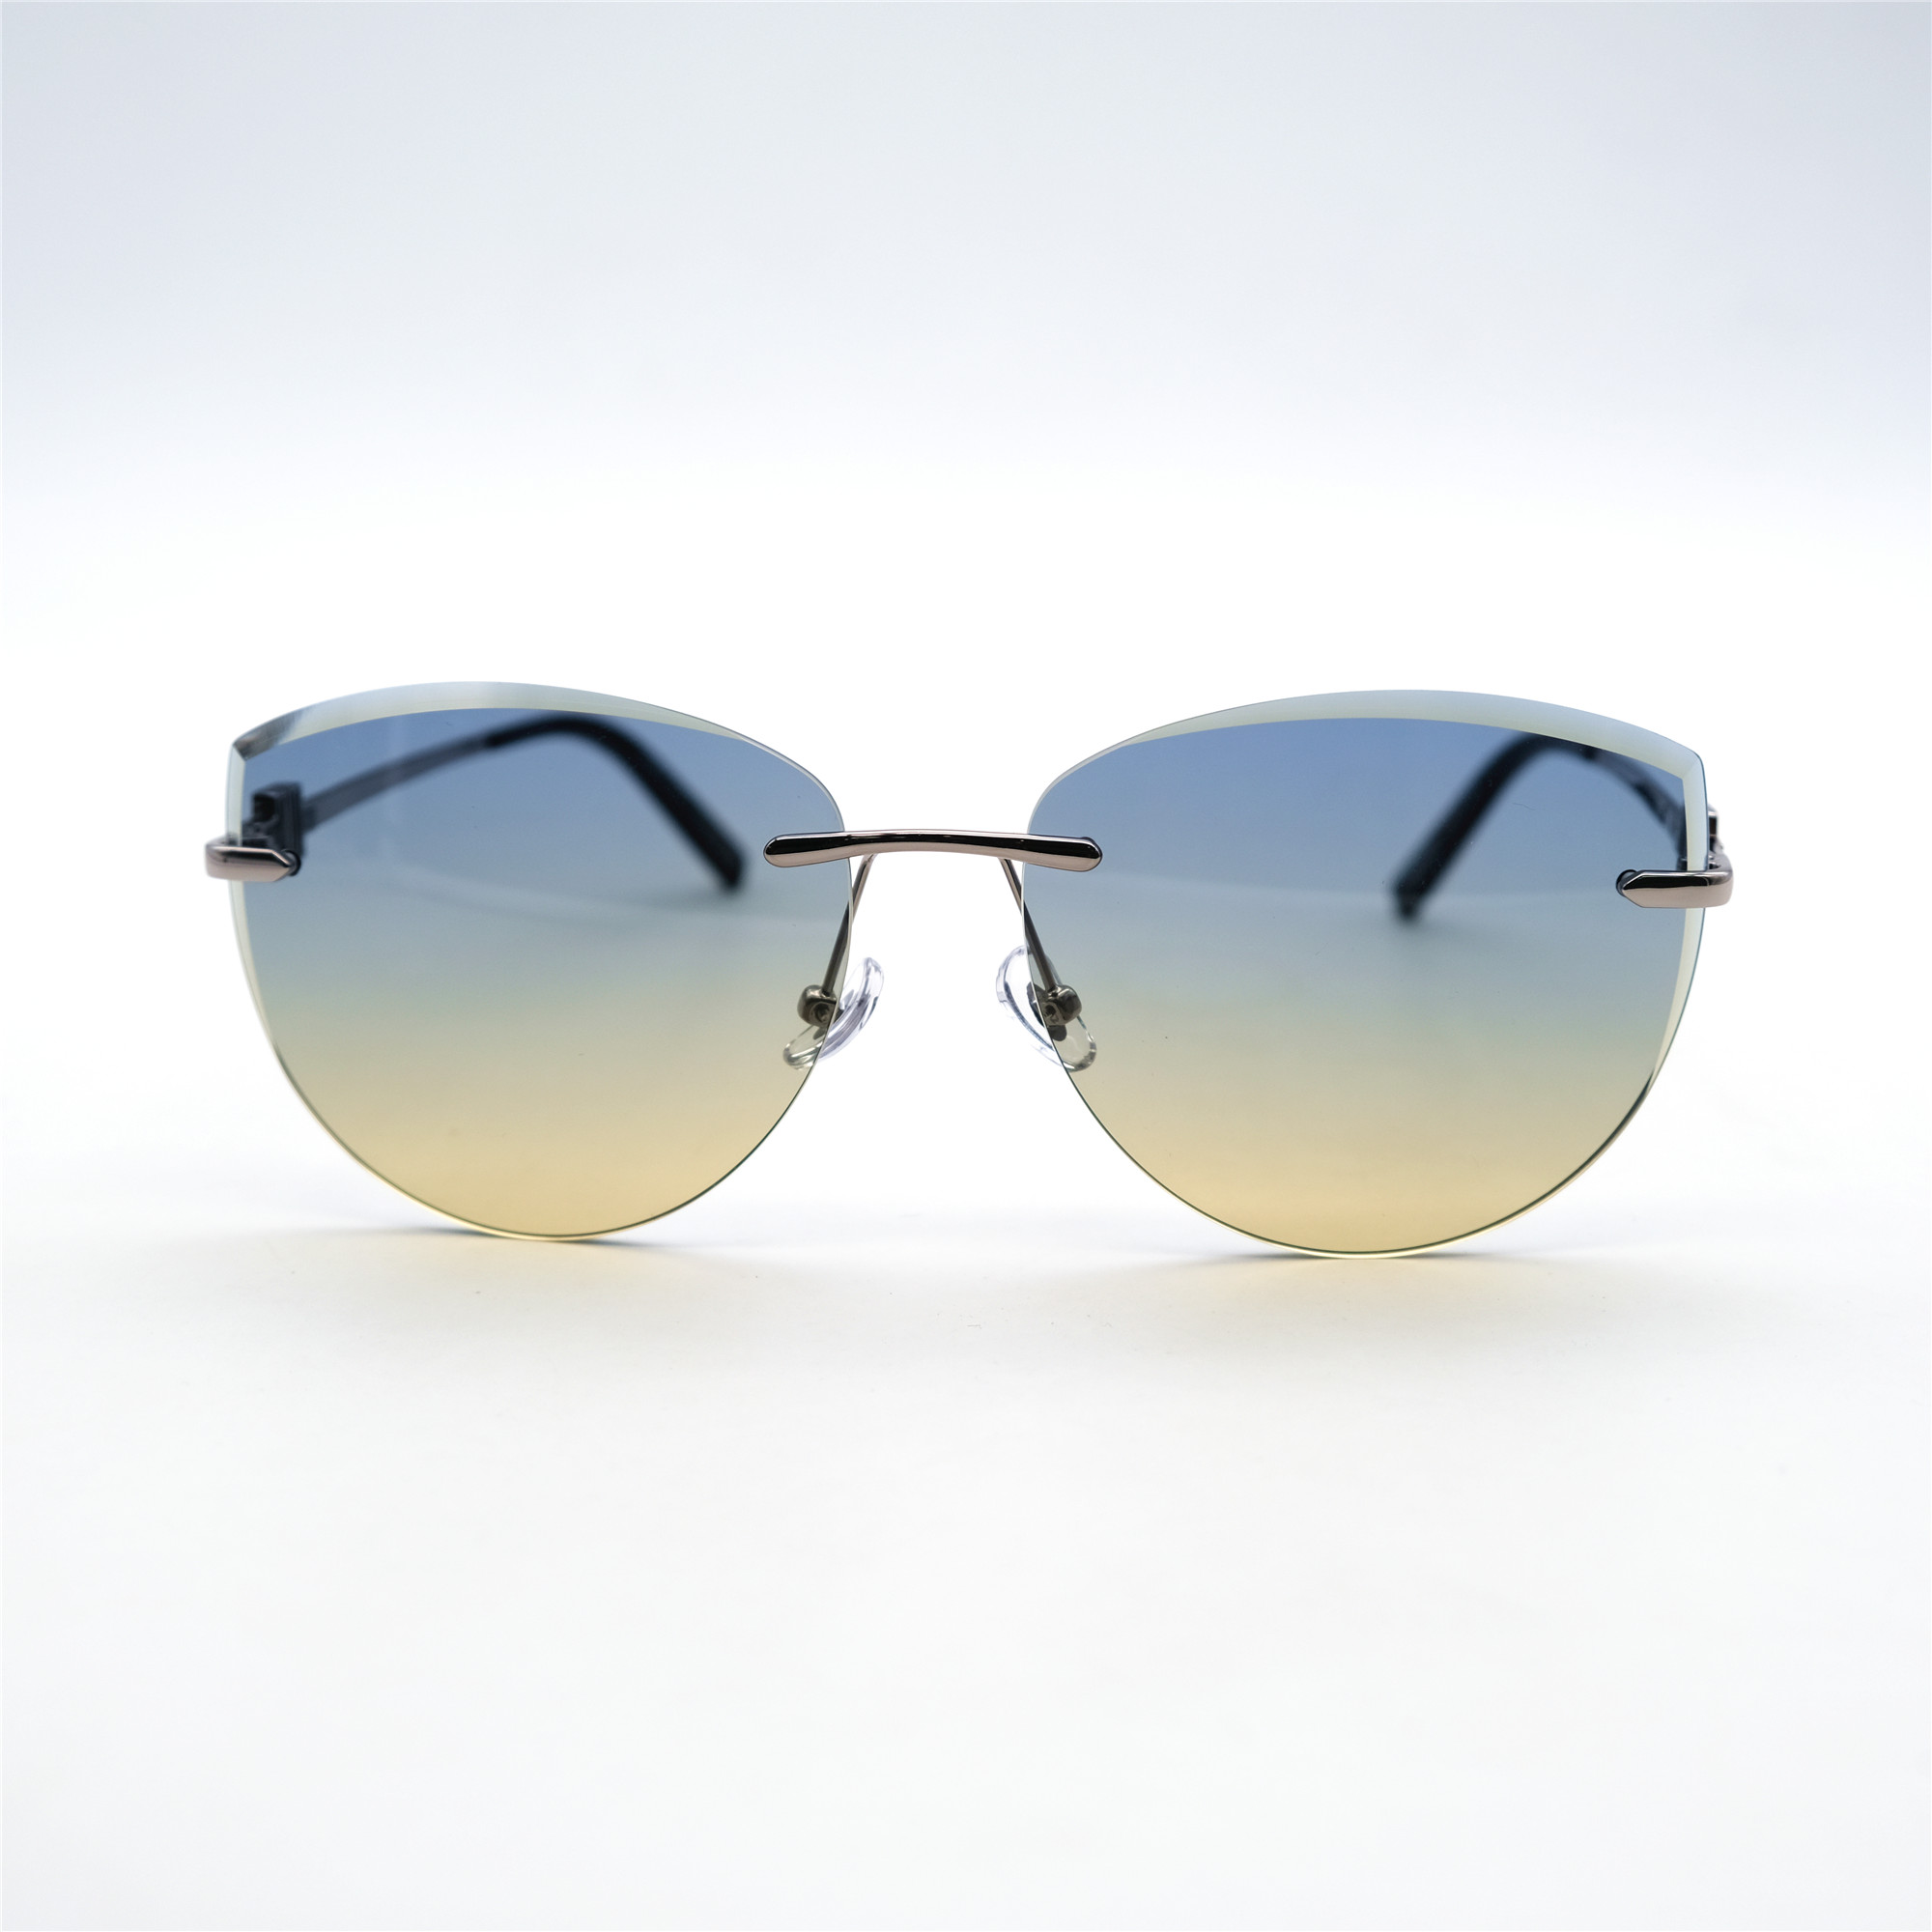  Солнцезащитные очки картинка Женские Yamanni  Авиаторы D2503-C3-26 